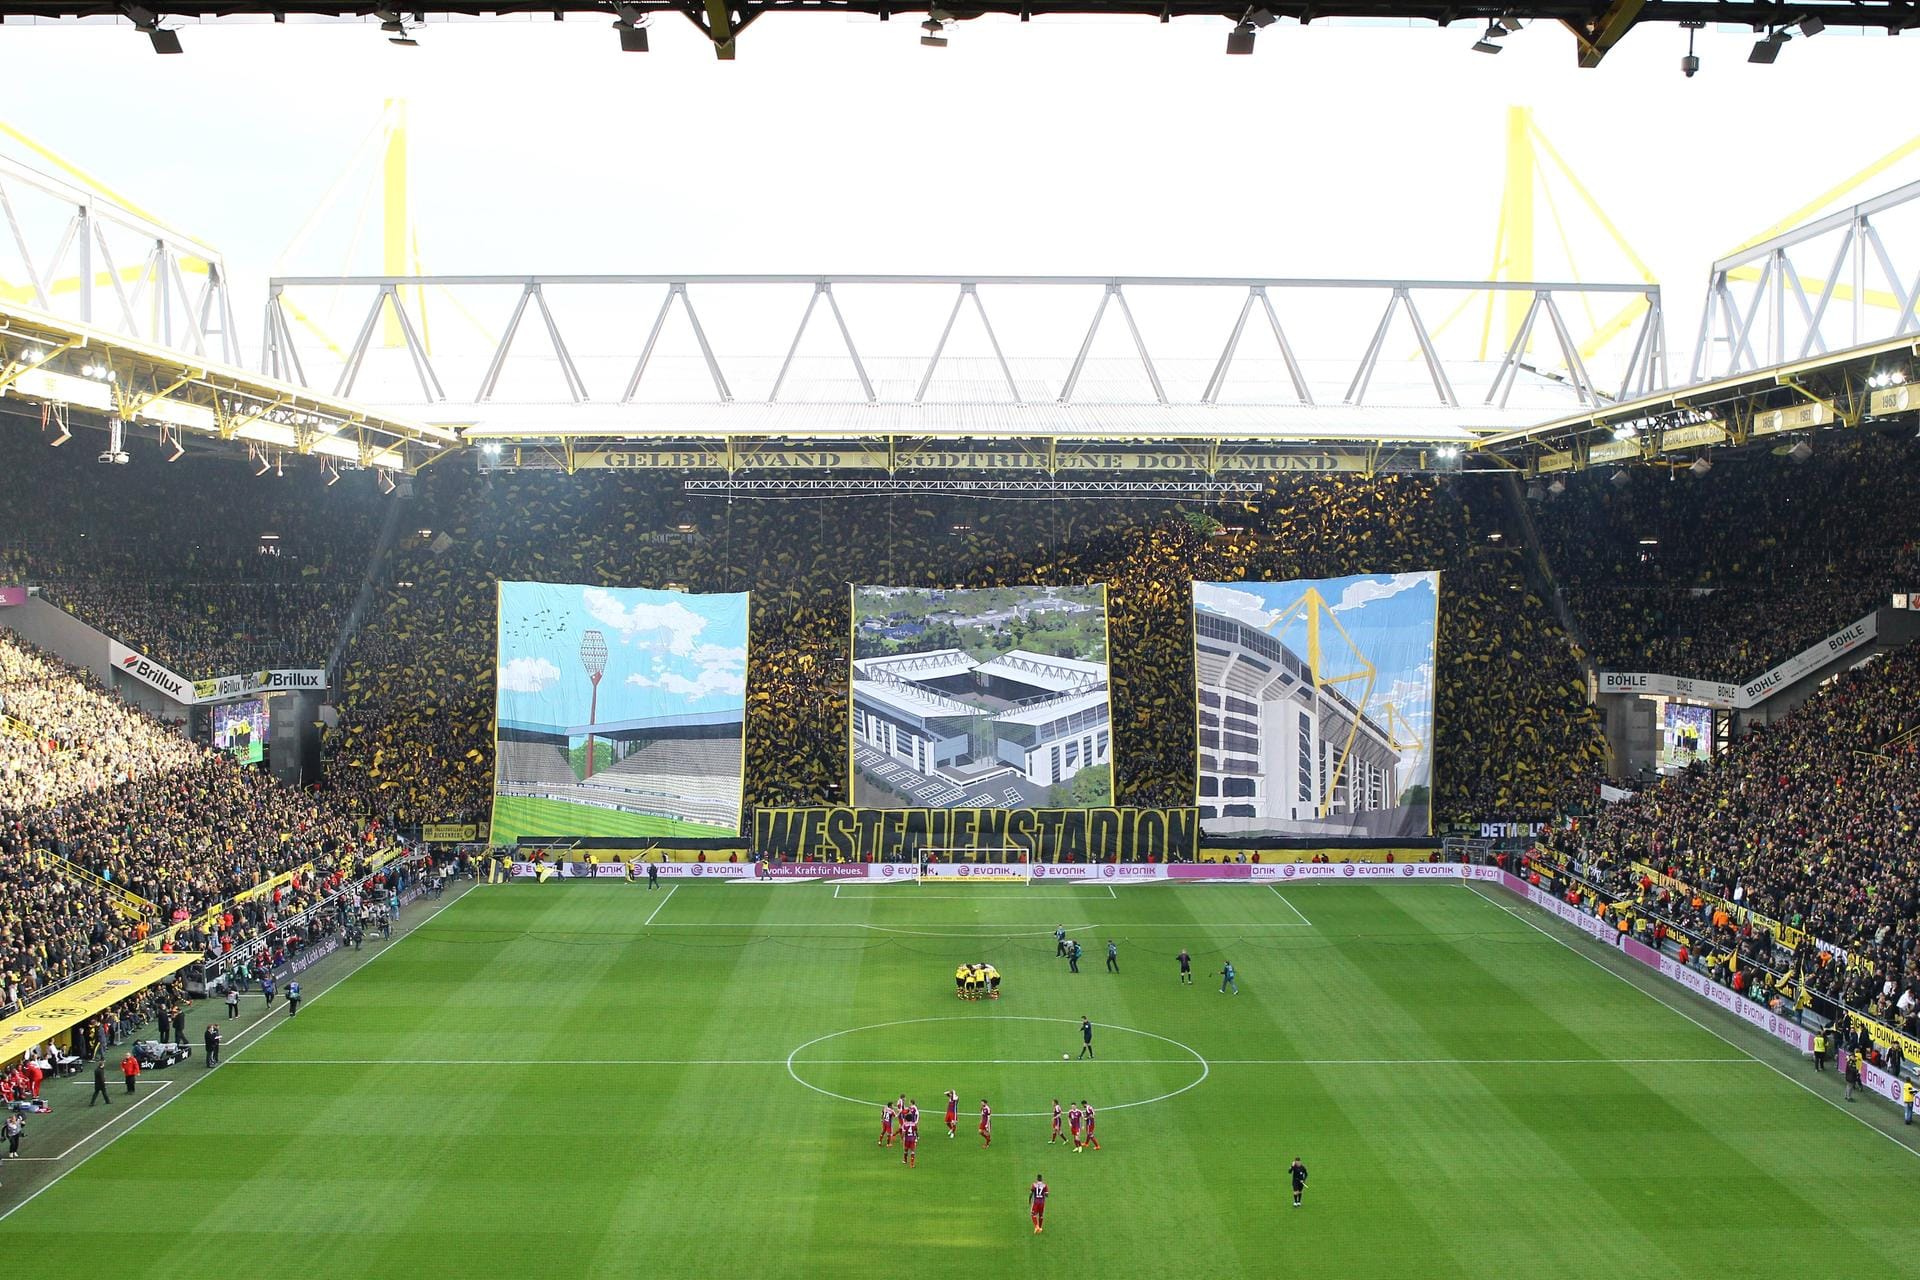 Die Informationsplattform "Wettbasis" hat 285.000 Google-Bewertungen aller Stadien der 1. und 2. Bundesliga ausgewertet. Herausgekommen ist ein positives Ergebnis: Die Erstligastadien erhielten im Schnitt 4,4 von 5 Sternen, die Zweitligaarenen 4,3. Den Titel des beliebtesten Stadions Deutschlands teilen sich zwei Bundesliga-Heimstätten mit einem Schnitt von je 4,7: Zum einen der Dortmunder Signal-Iduna-Park...